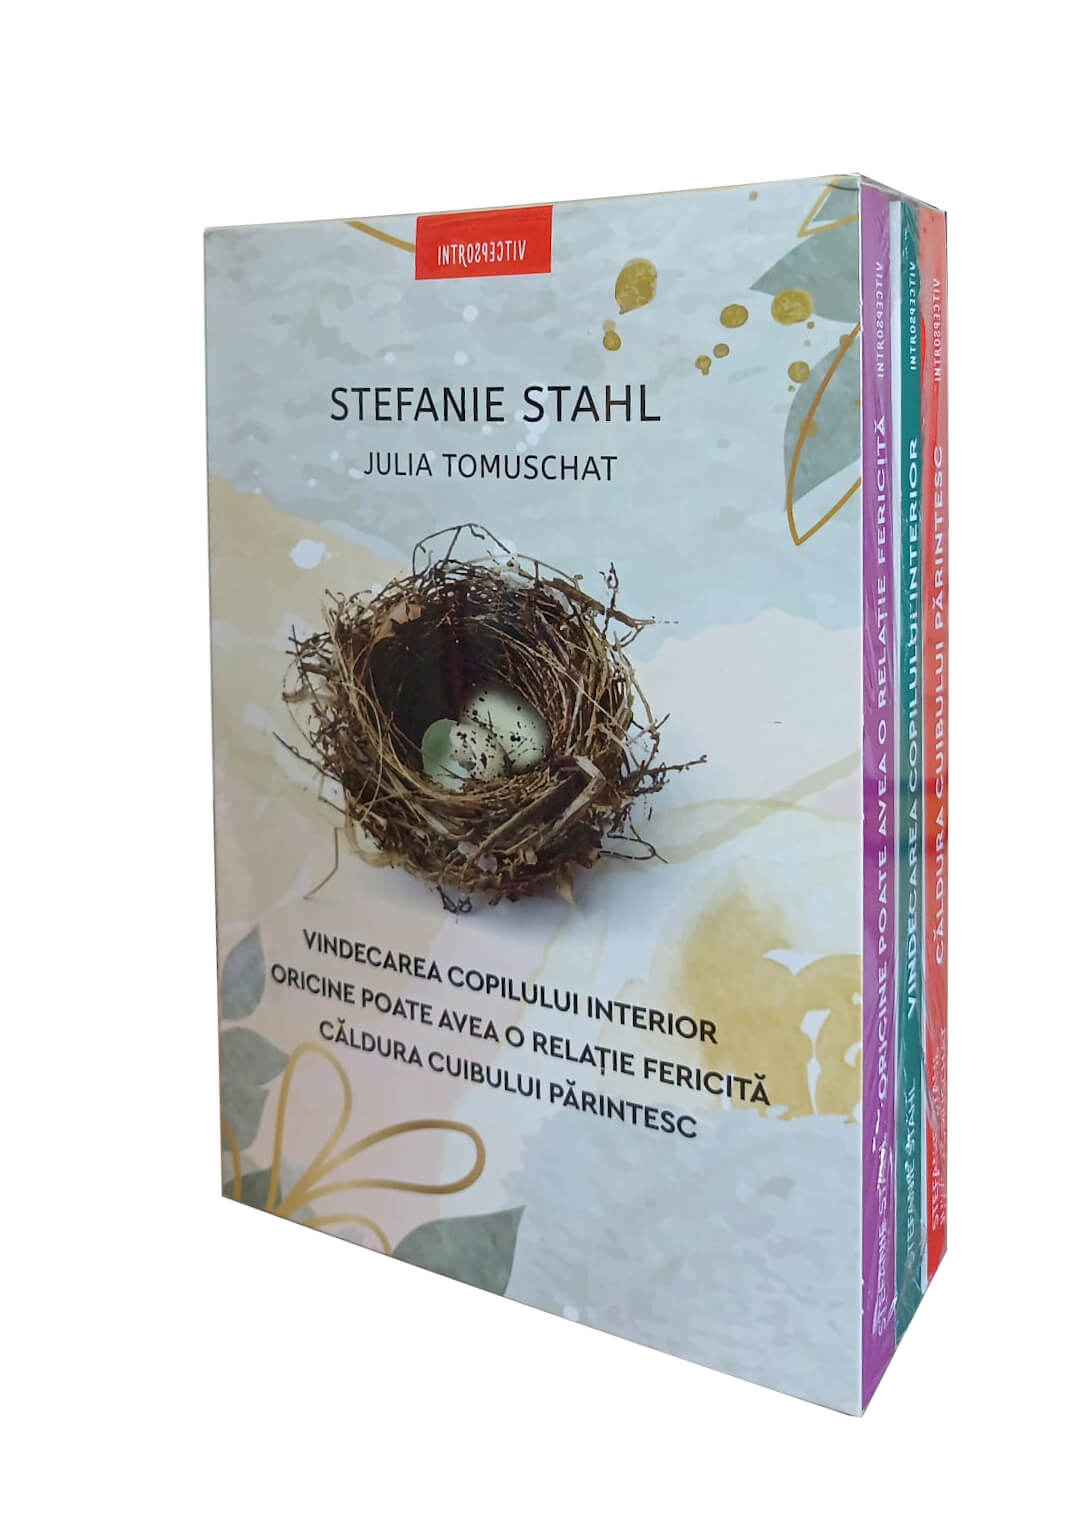 Cutie Stefanie Stahl – seria Vindecarea copilului interior copilului poza bestsellers.ro